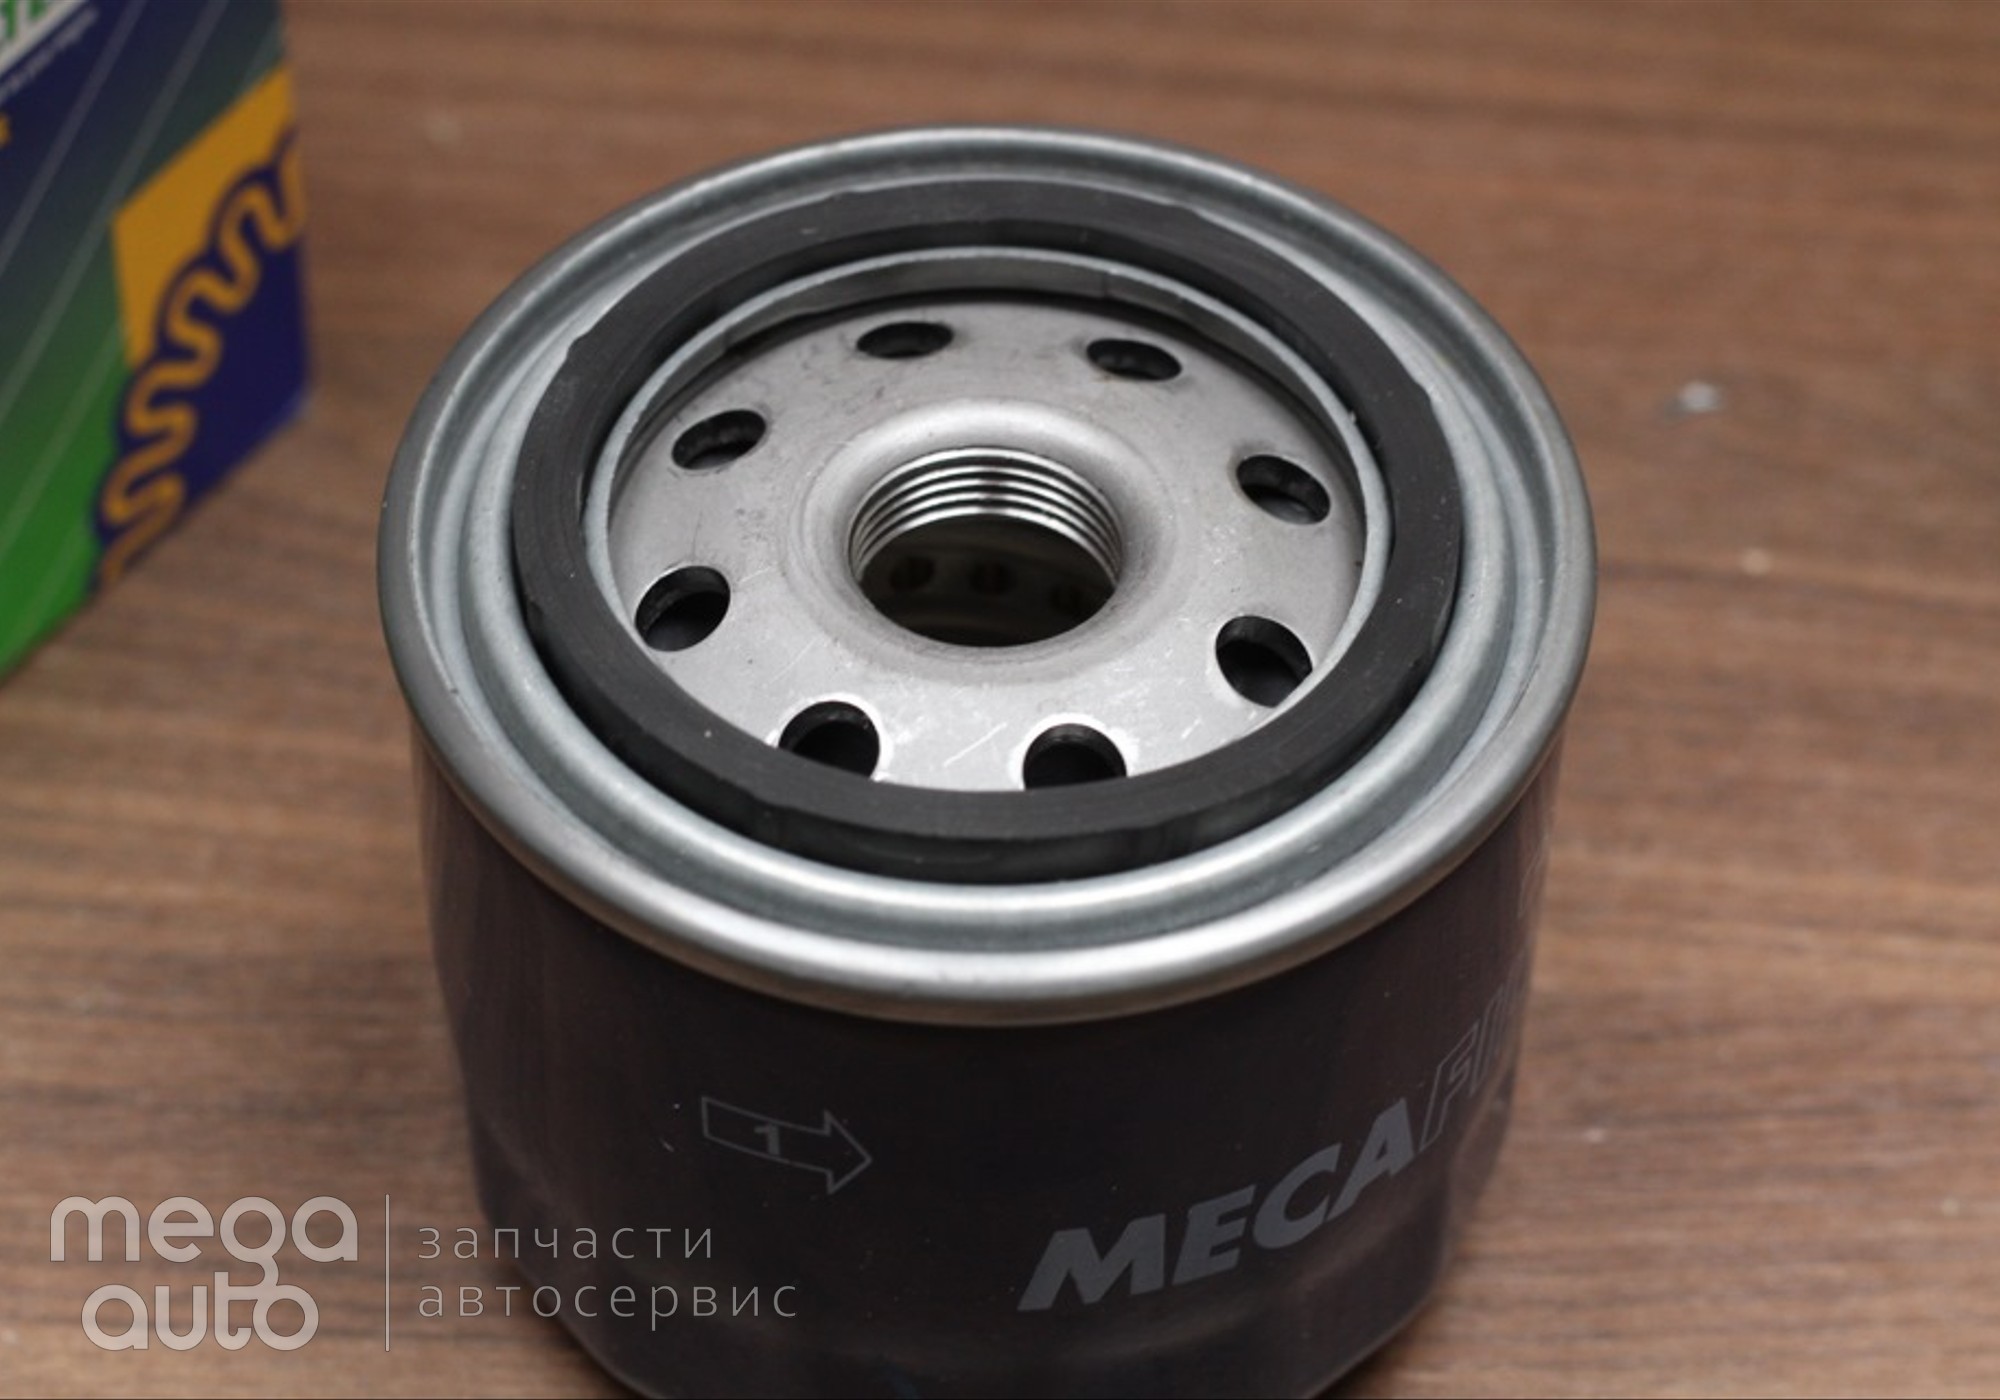 2630035530 Масляный фильтр хендай акцент( MecaFilter) для Honda Capa